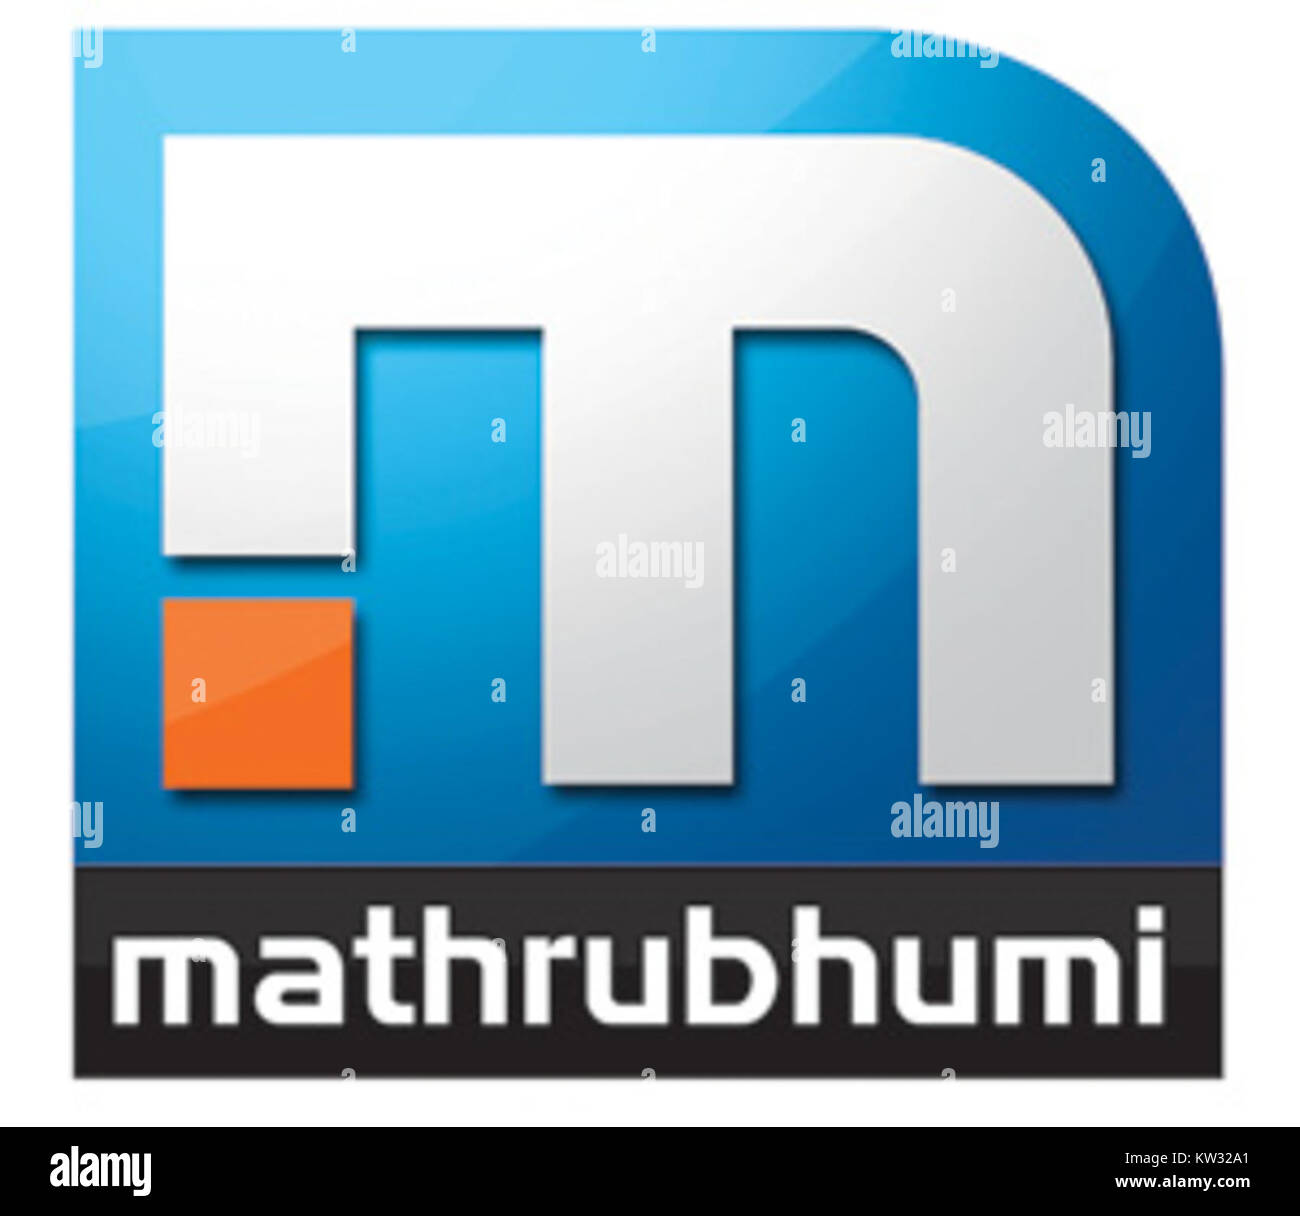 Online mathrubhumi Get Mathrubhumi